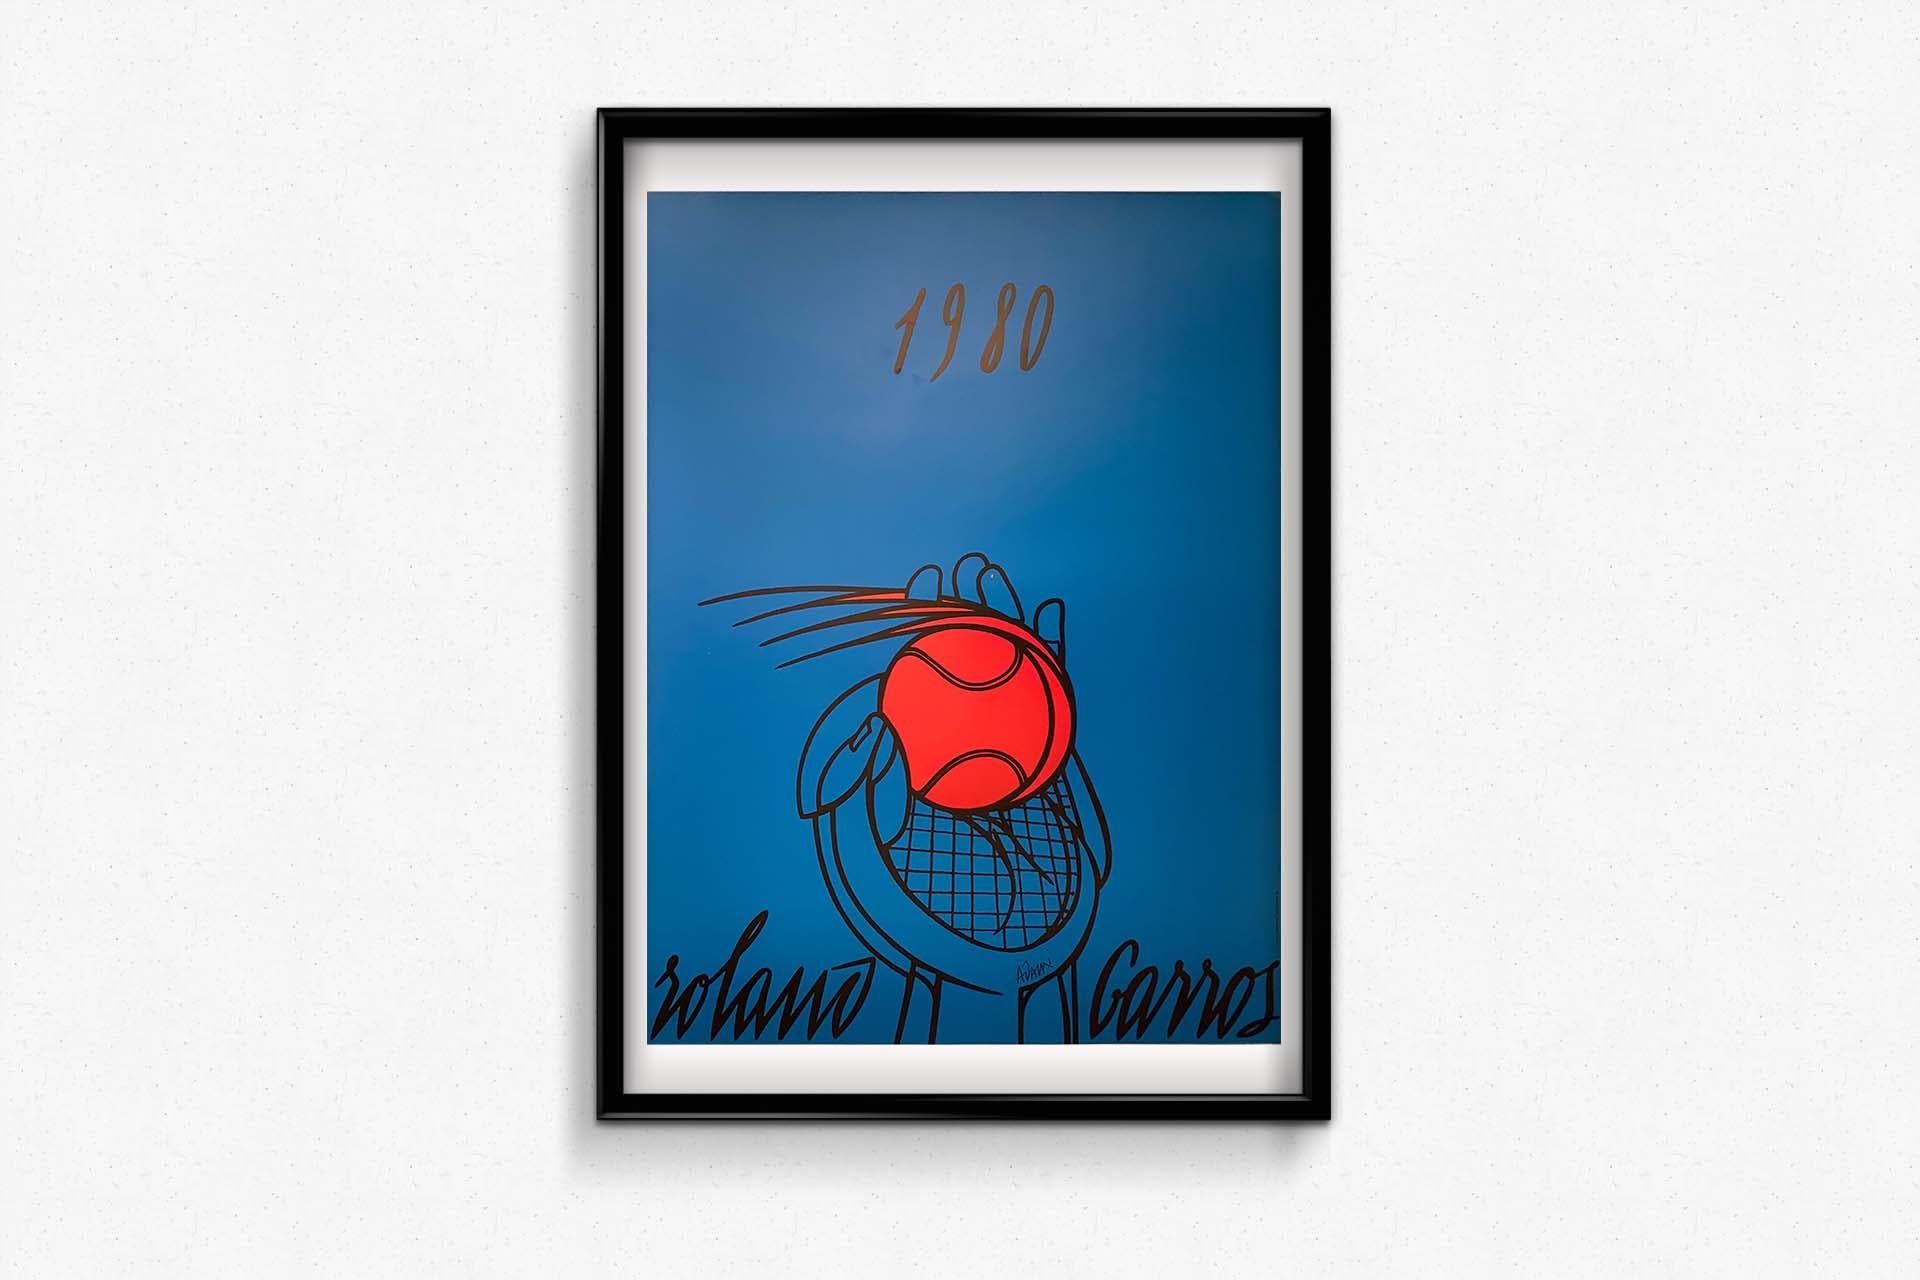 Affiche originale d'Adami pour promouvoir l'Open de tennis français de 1980 de Roland Garros en vente 2